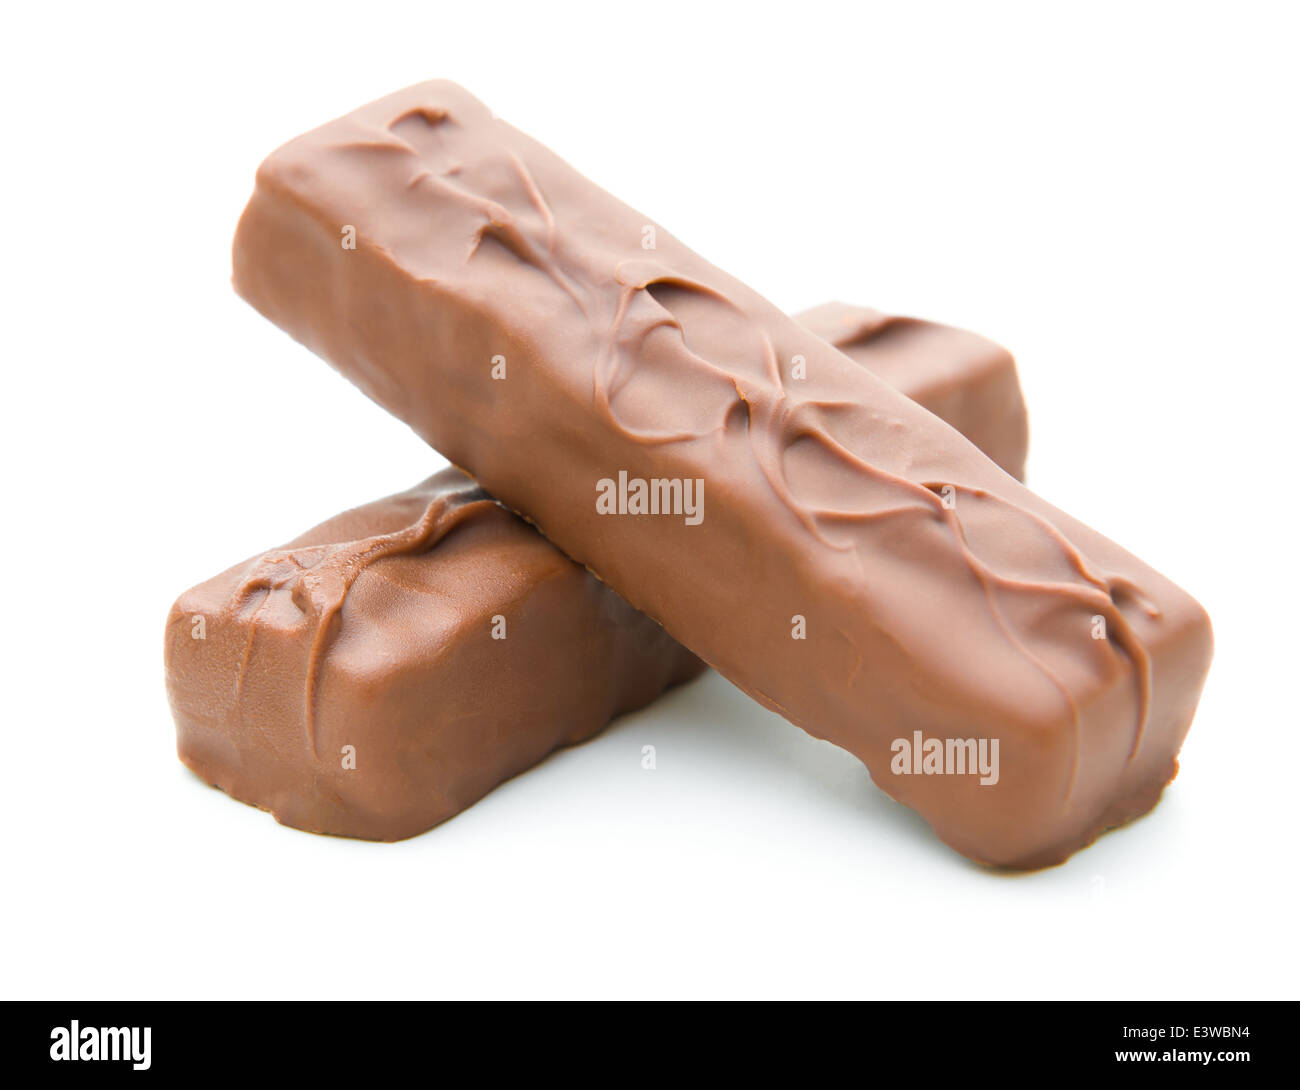 zwei Stücke Schokolade Waffeln Block auf weißem Hintergrund Stockfoto